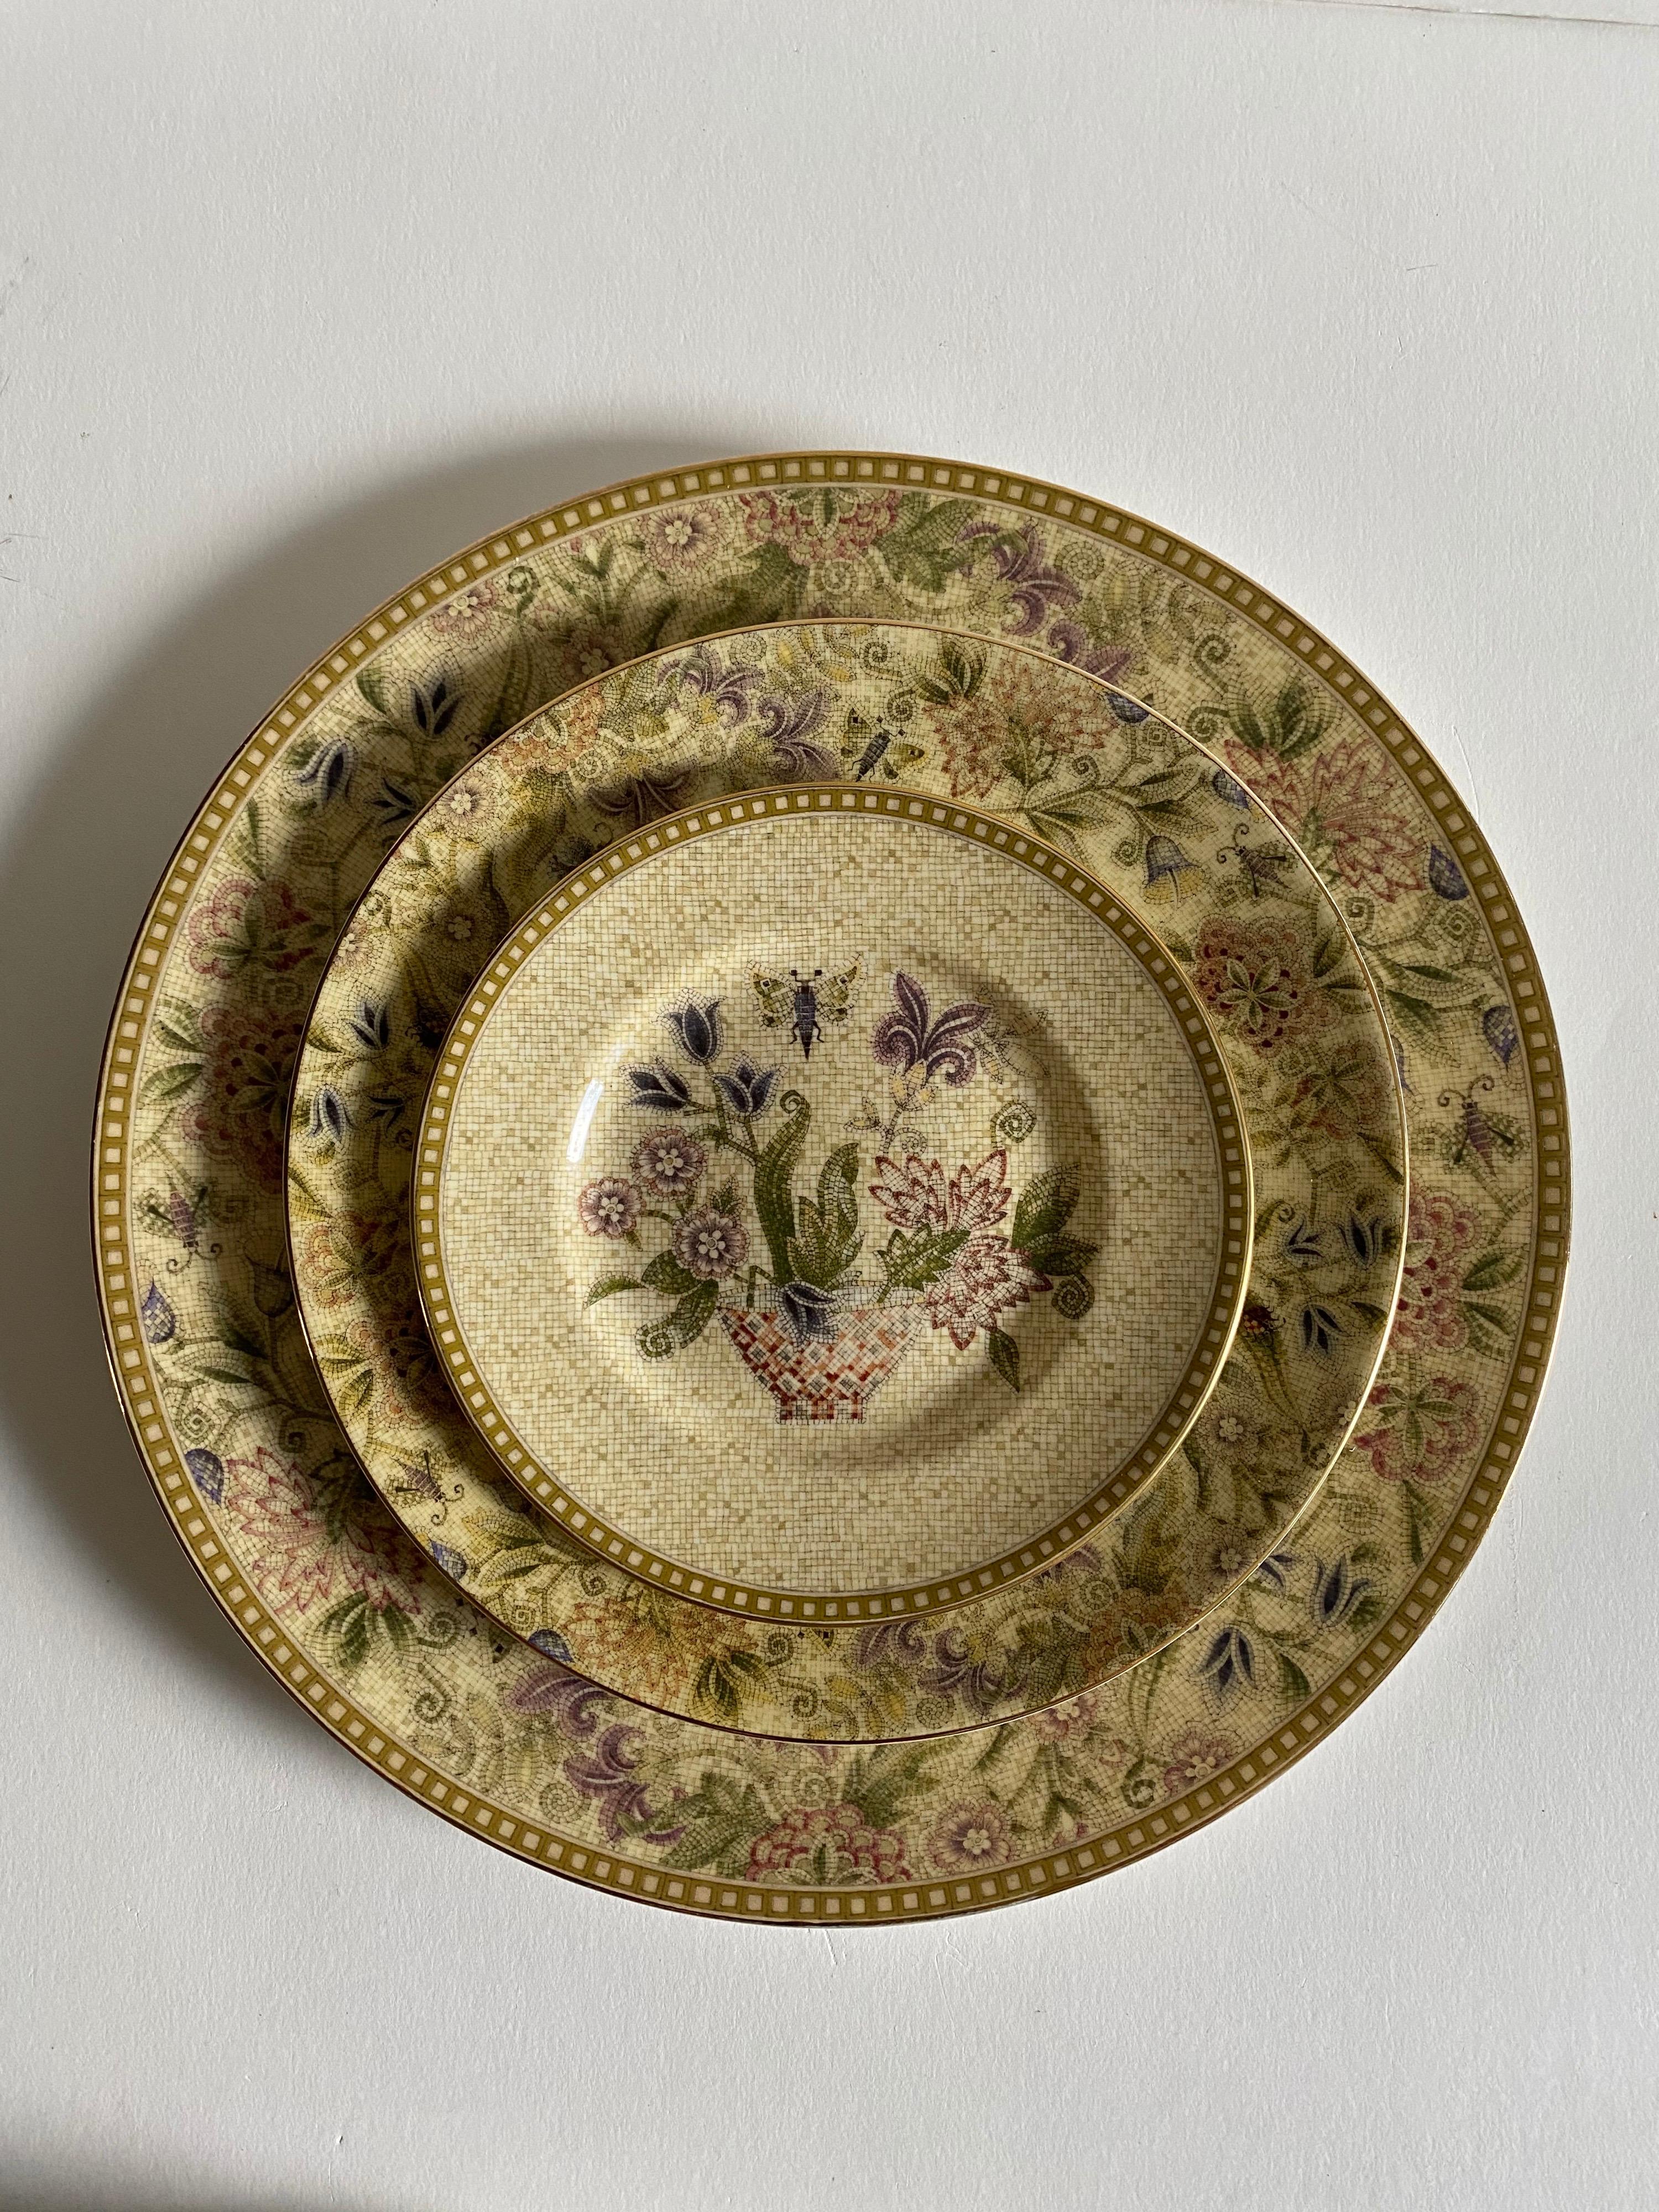 Un lot de 25 pièces de vaisselle au motif Floral Tapestry de Wedgwood. 

Signé. Fabriqué en Angleterre. Produit de 1997 à 2005.

Porcelaine d'os.

Comprend les 25 pièces suivantes :
10 pcs- Assiettes à dîner, largeur : 10-3/4 pouces.
10 pcs-